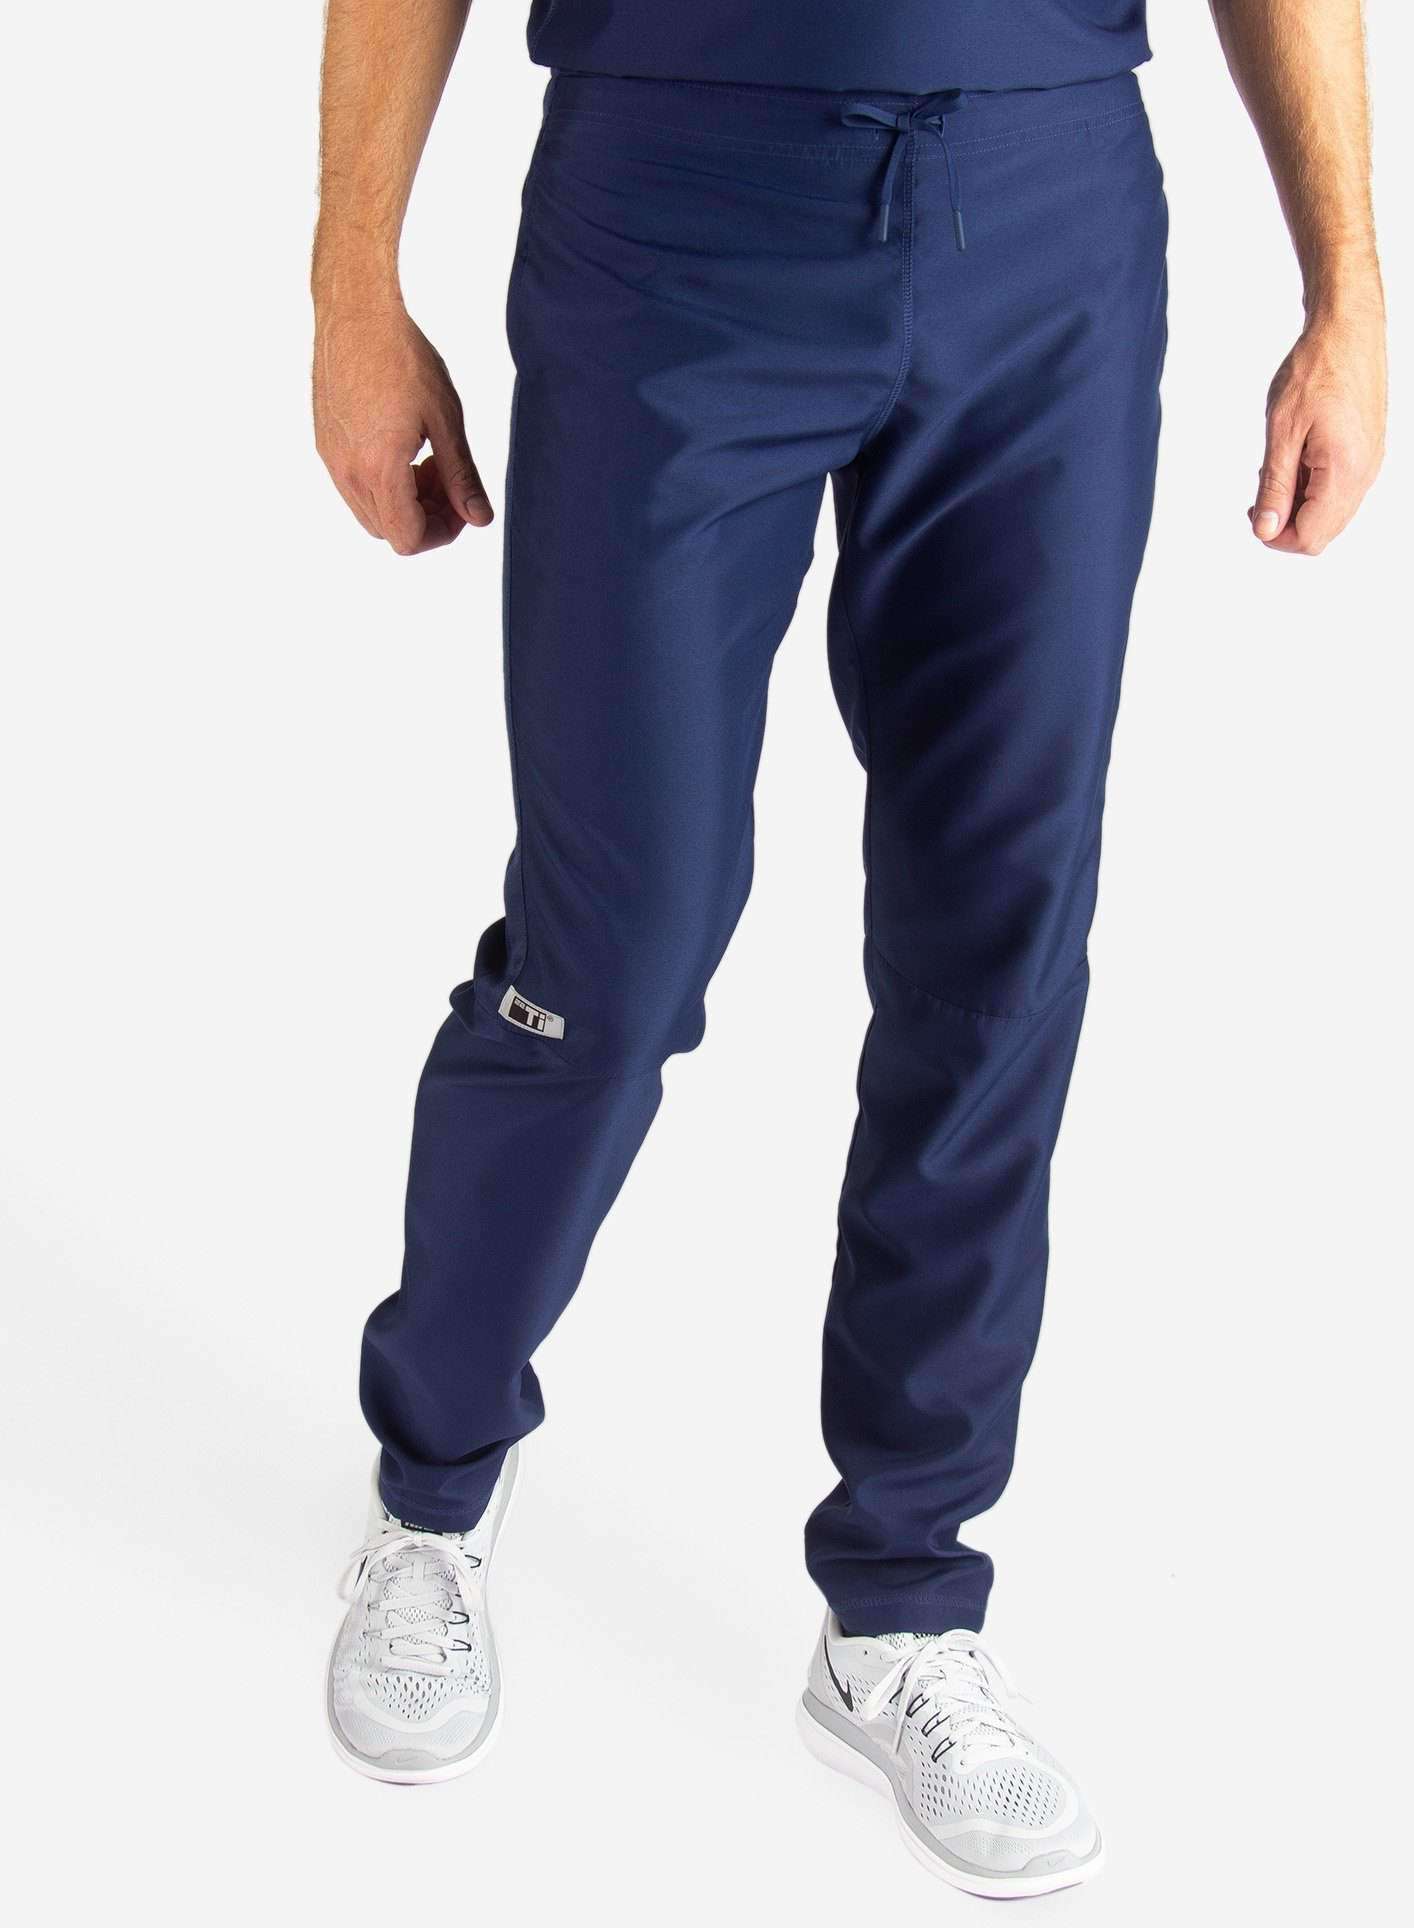 Men's Slim Fit Scrub Pants in navy-blue